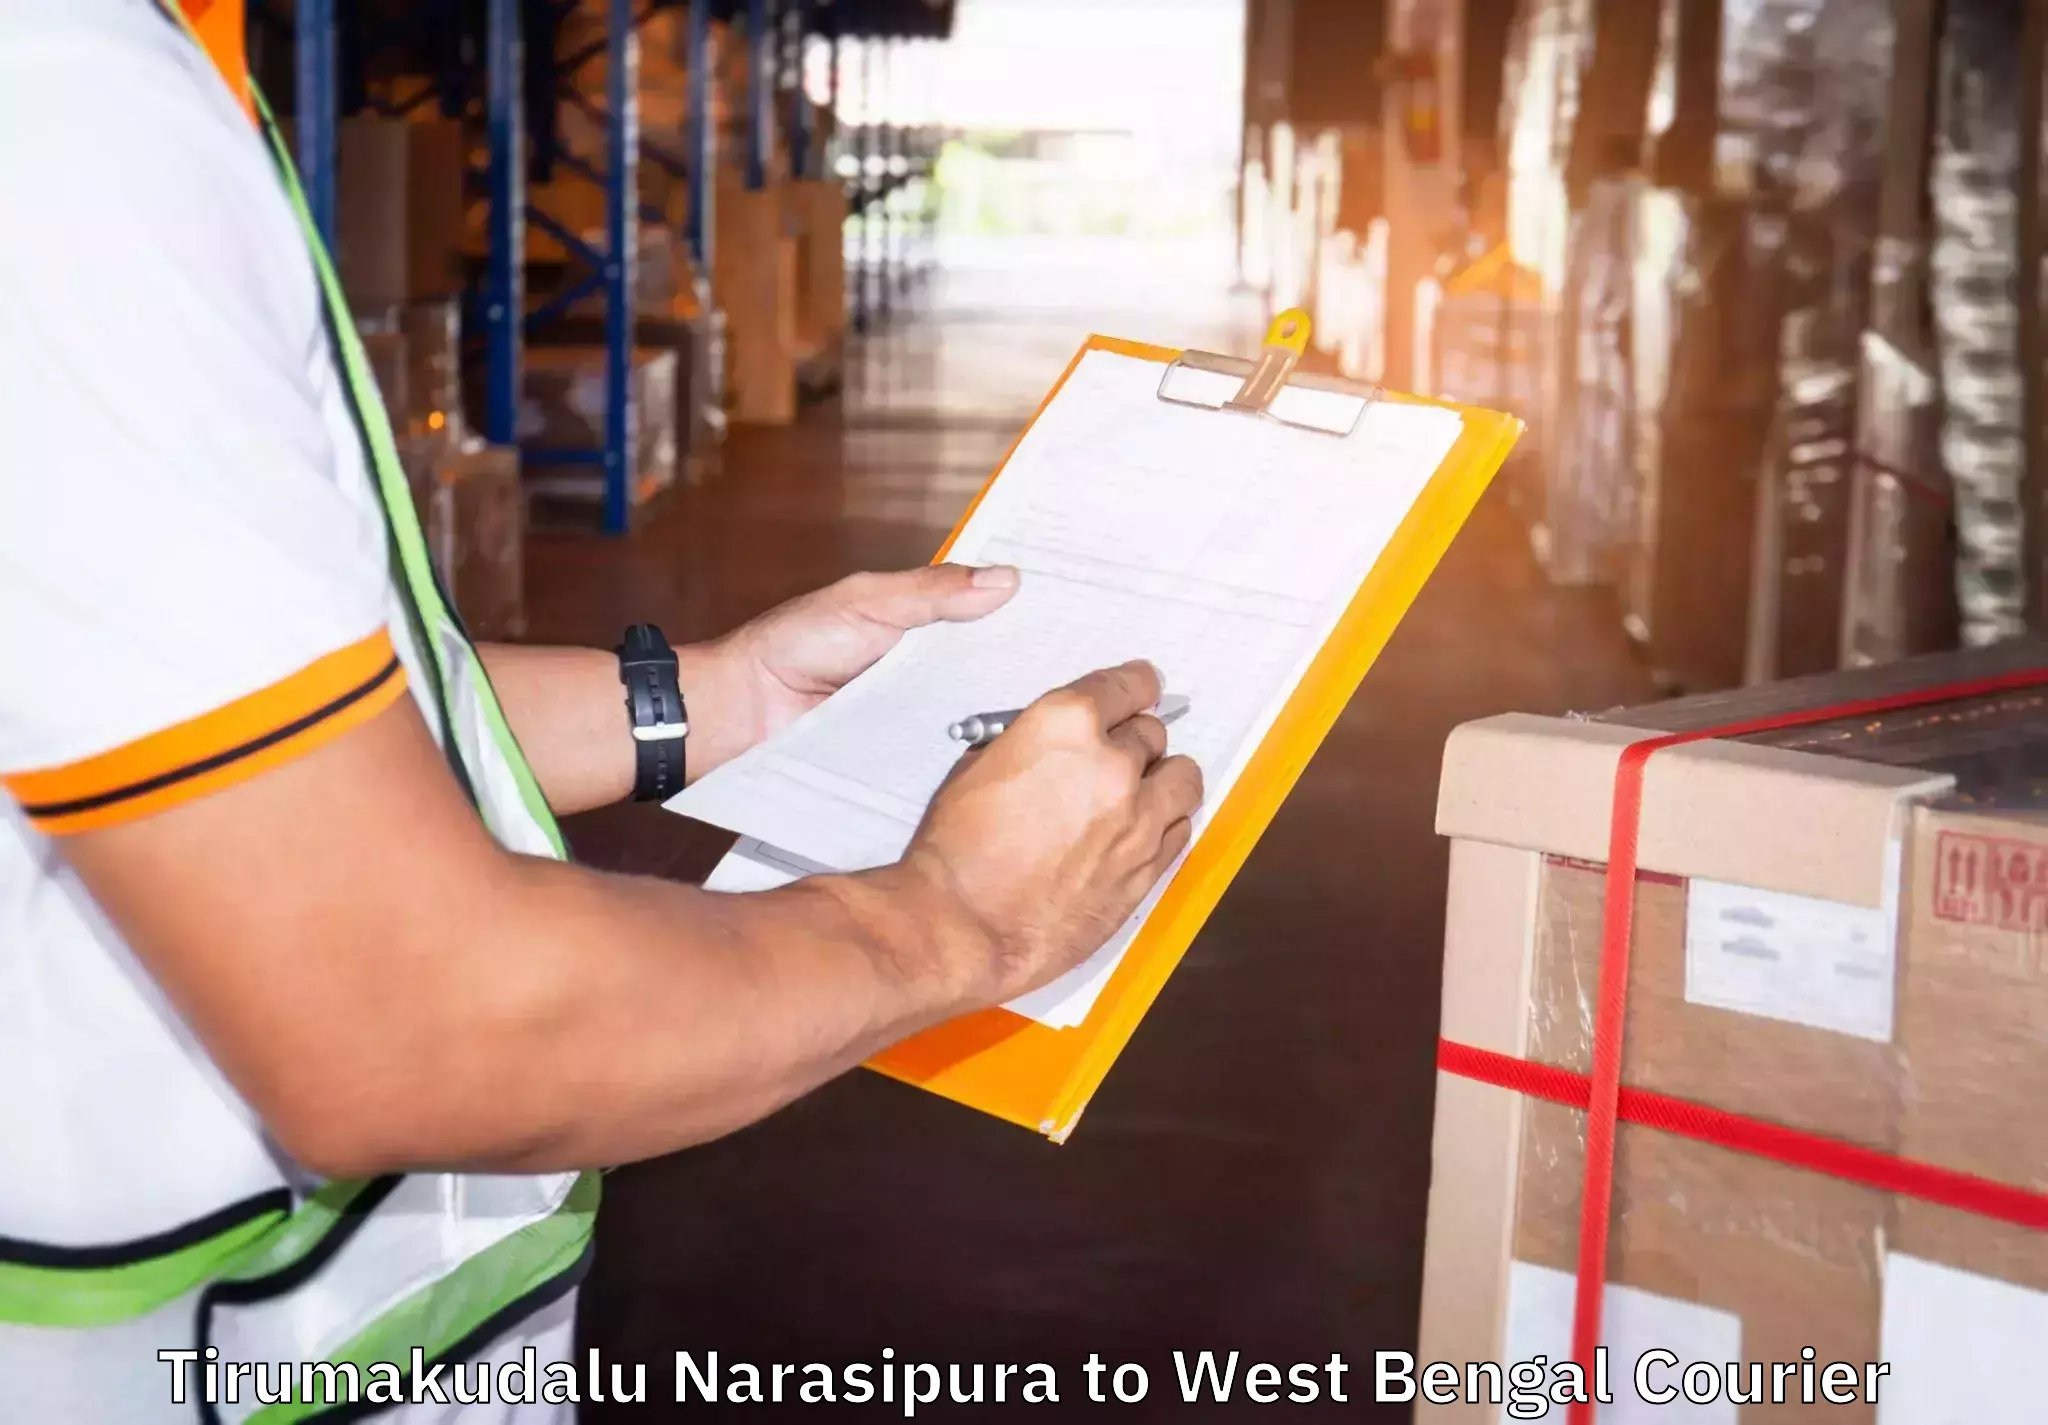 Full-service furniture transport Tirumakudalu Narasipura to Mekhliganj